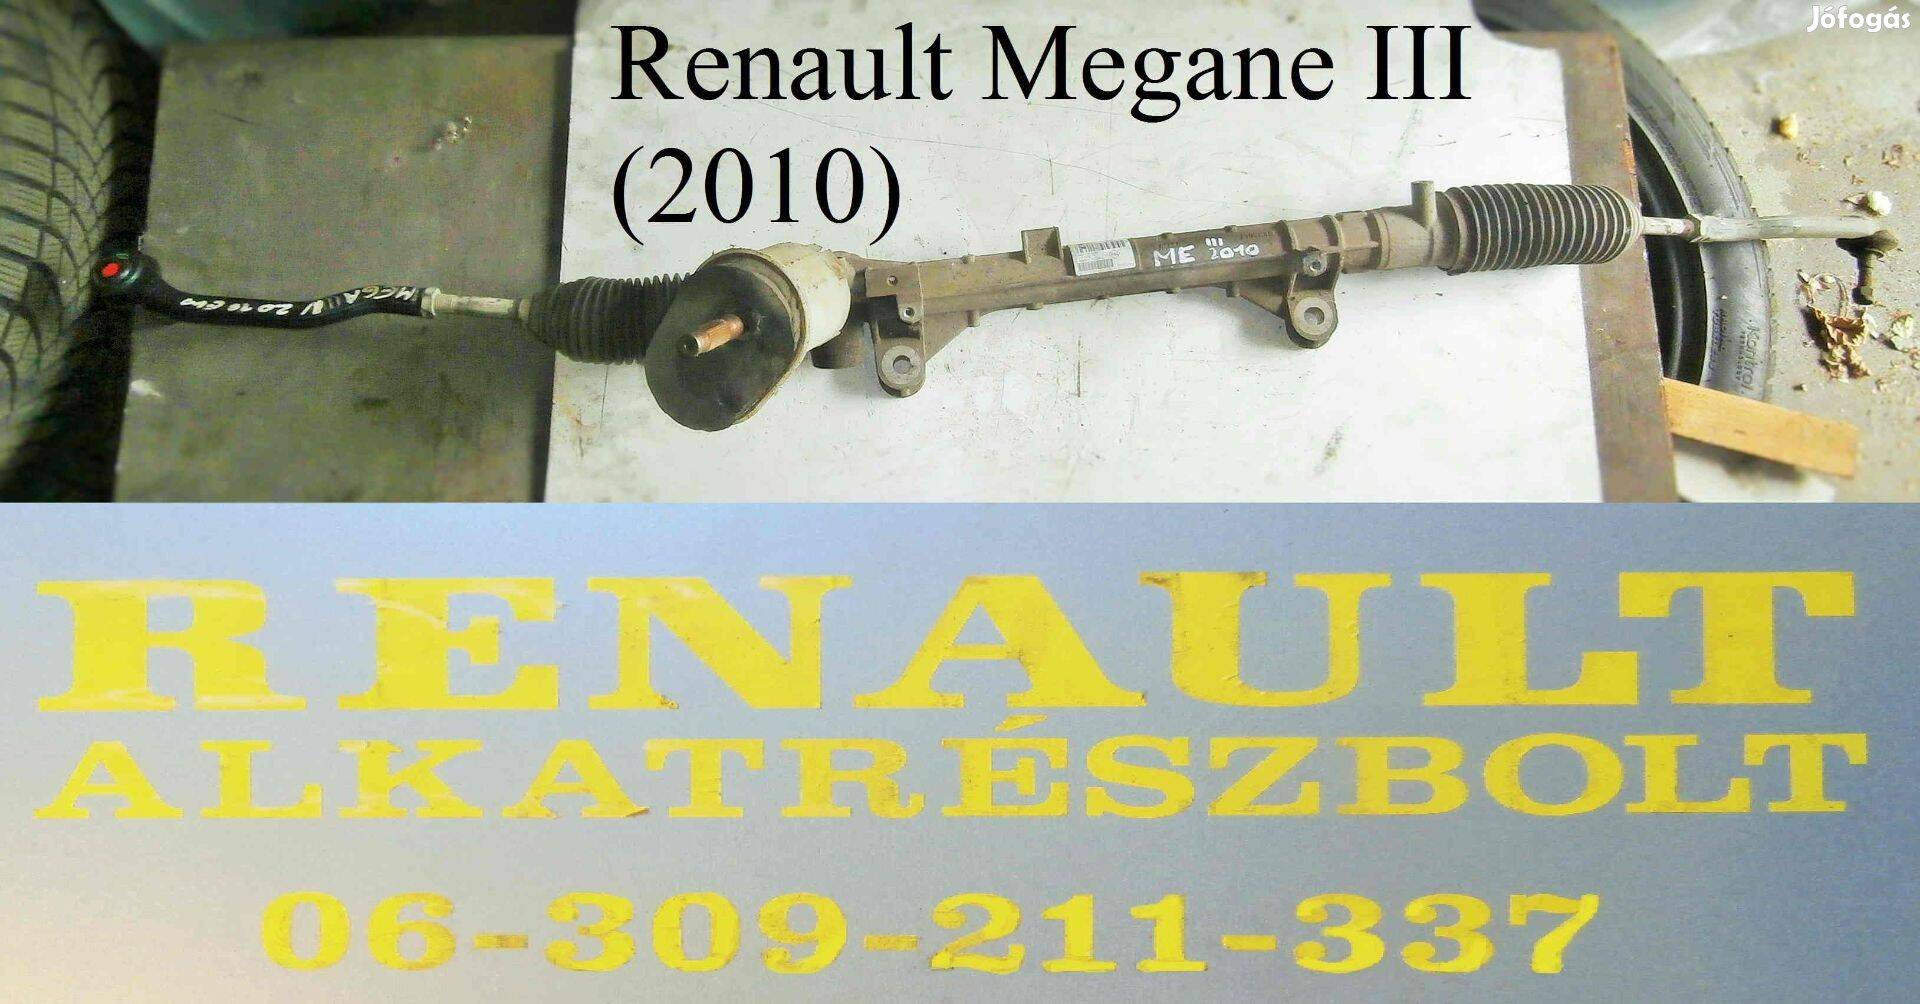 Renault Megane III 2010 kormánymű